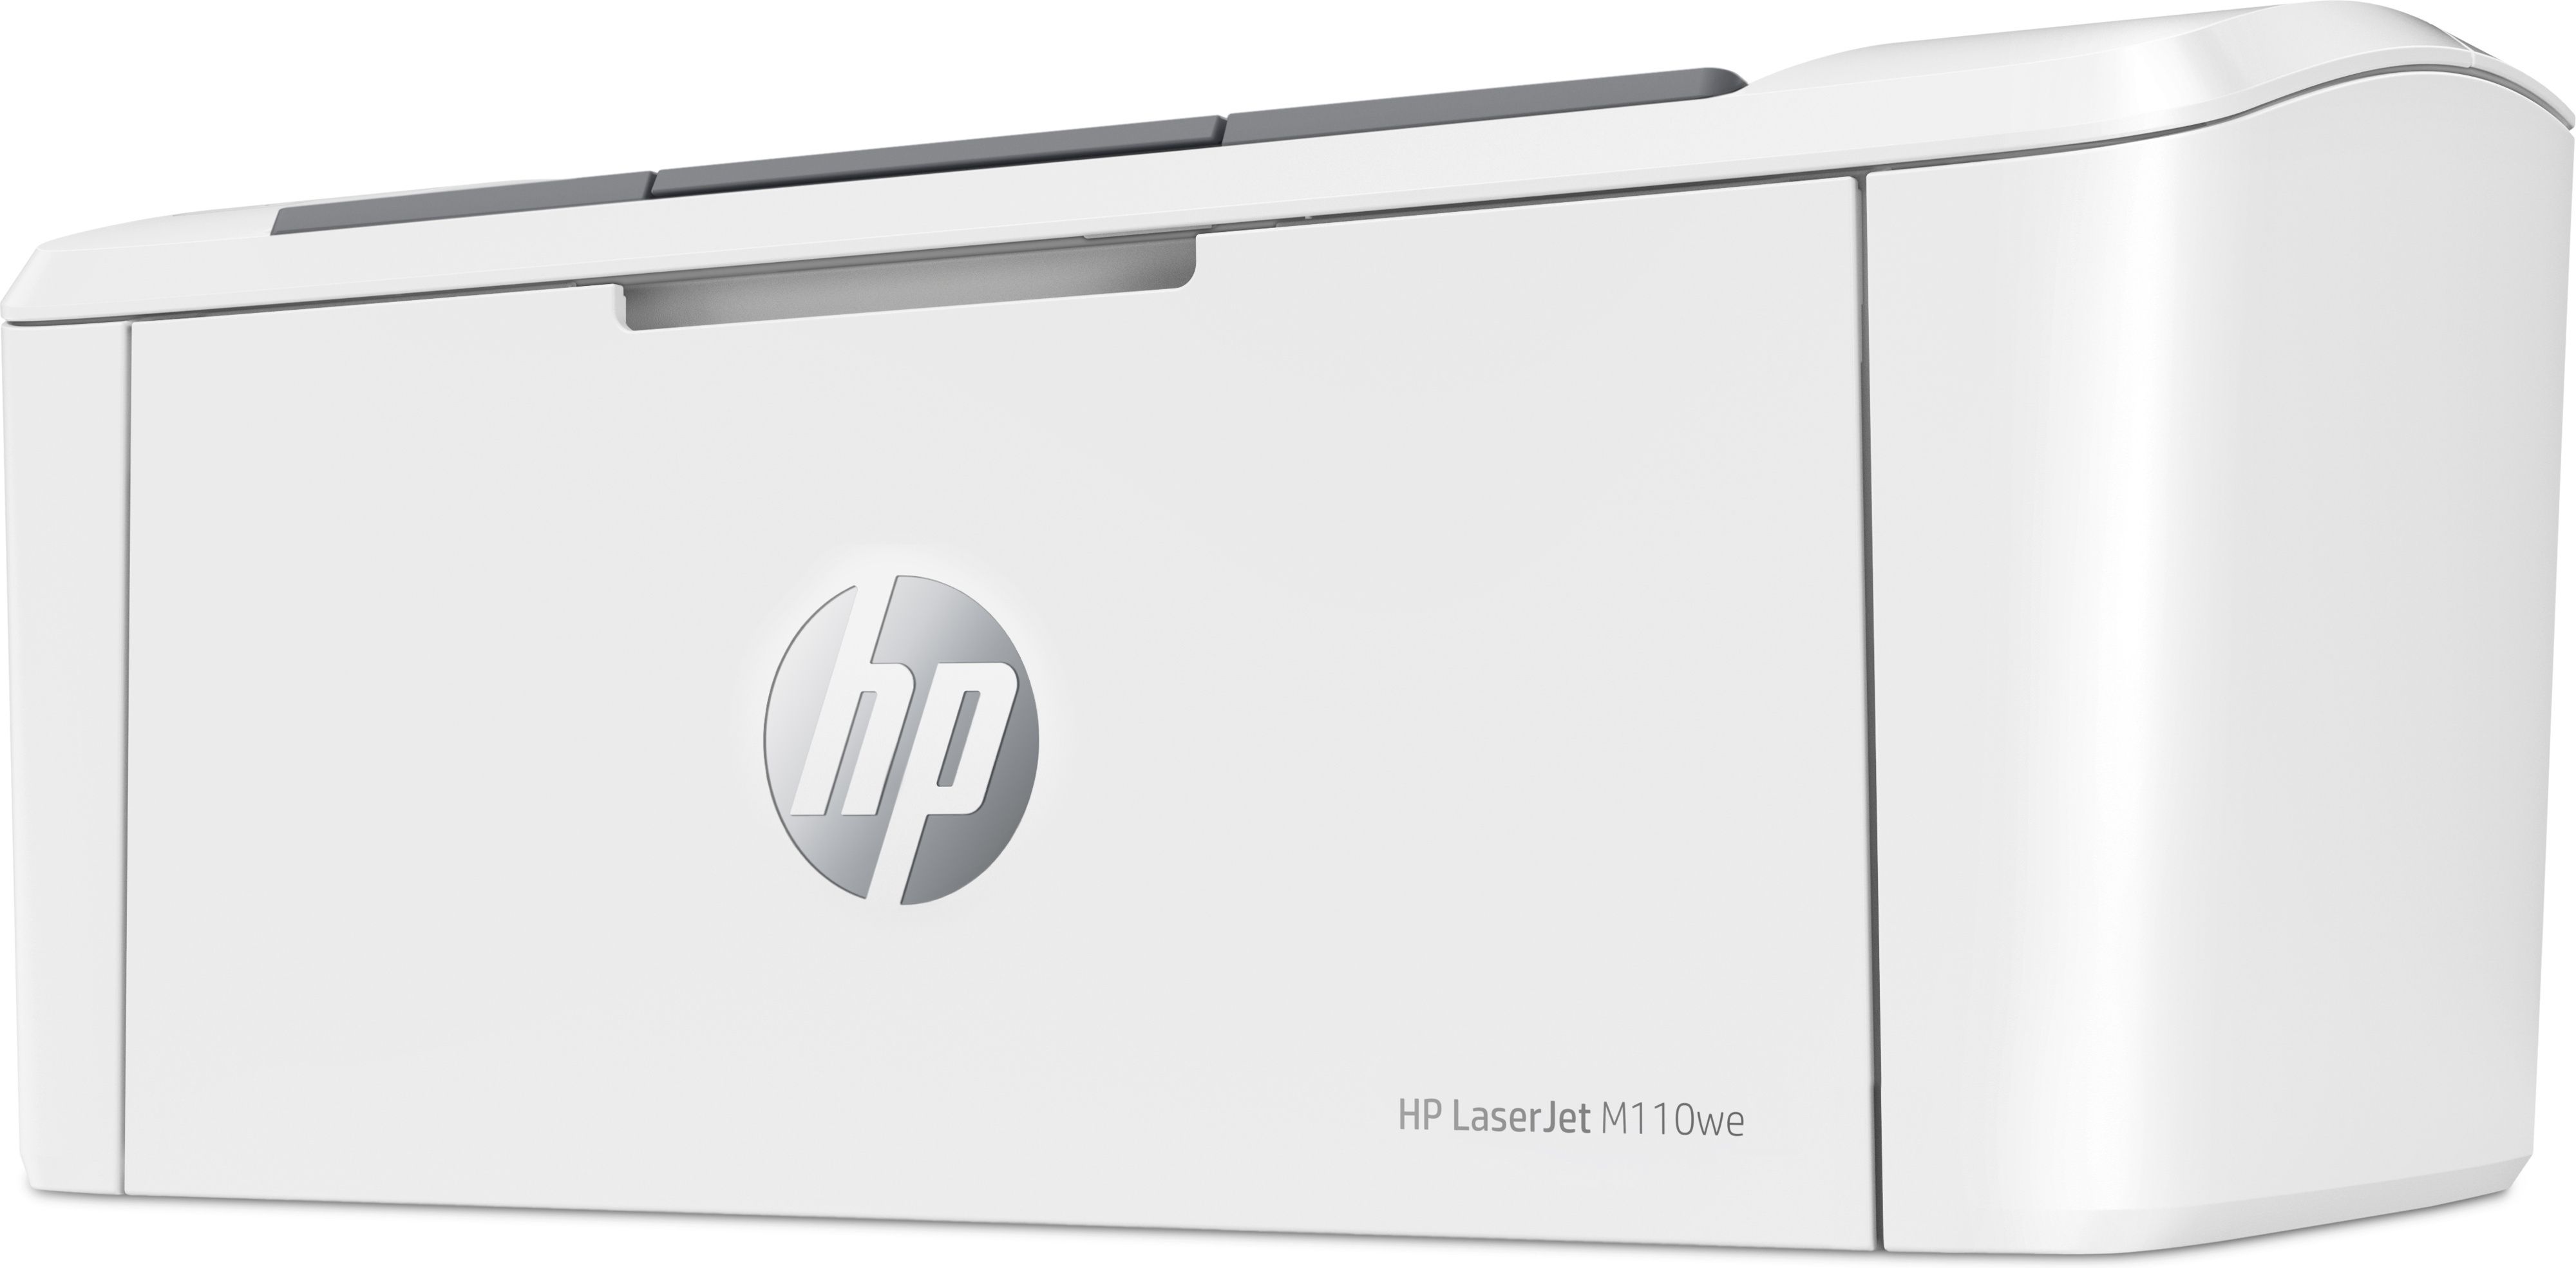 HP LASERJET M110WE PRINTER HP  MALLI edellyttää HP-tiliä, jatkuvaa Internet-yhteyttä ja alkuperäisen HP värin käyttöä